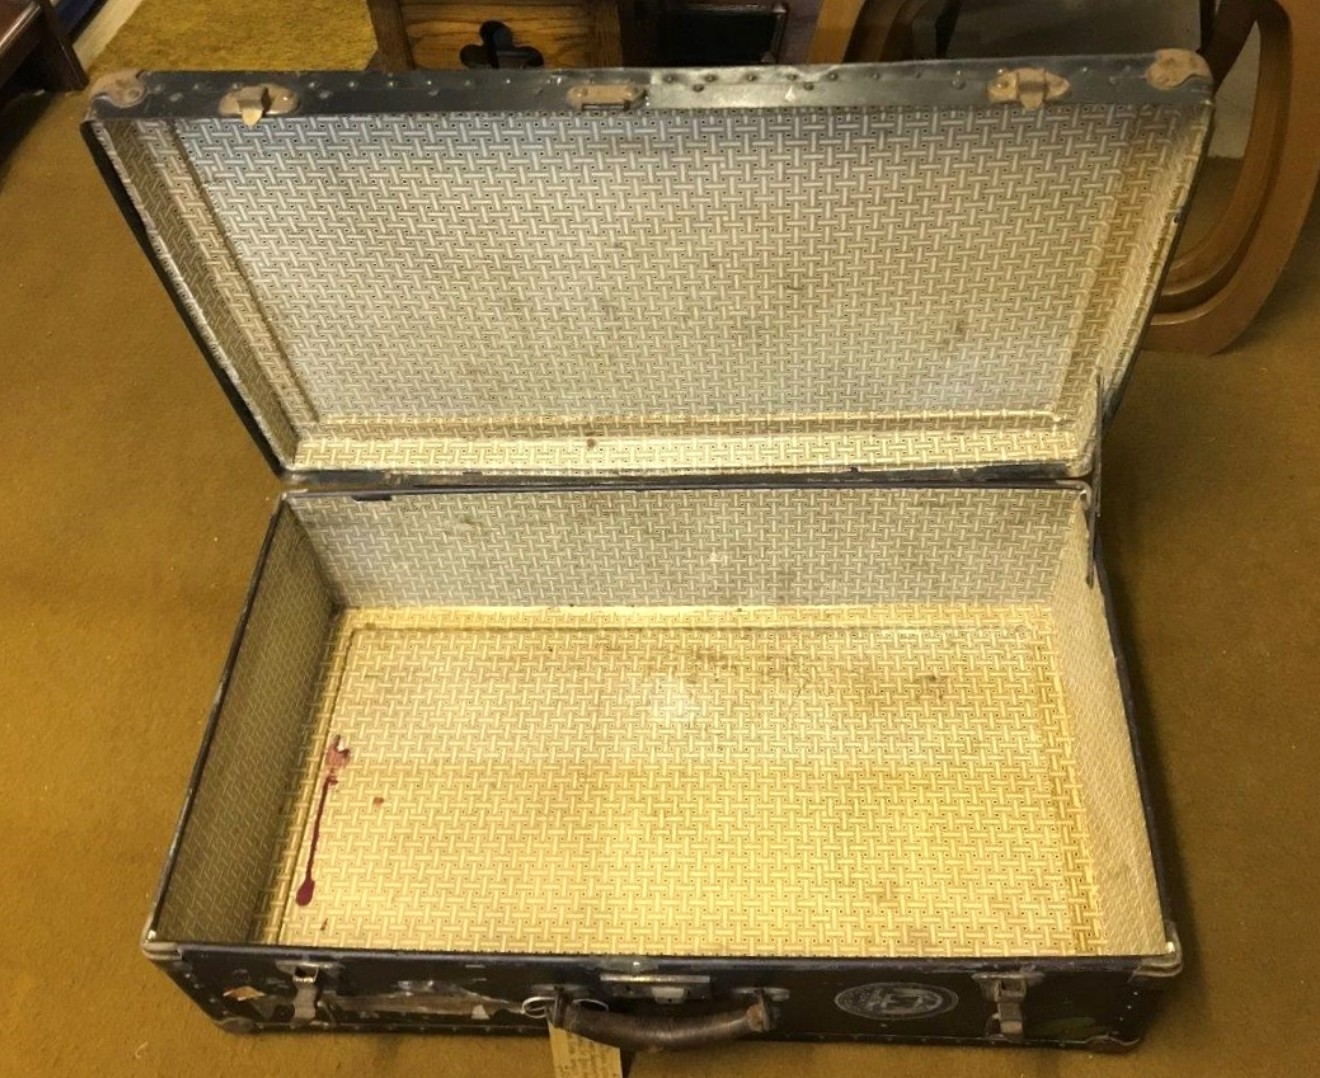 Vintage Carson Baggage "Rigidon" Suitcase